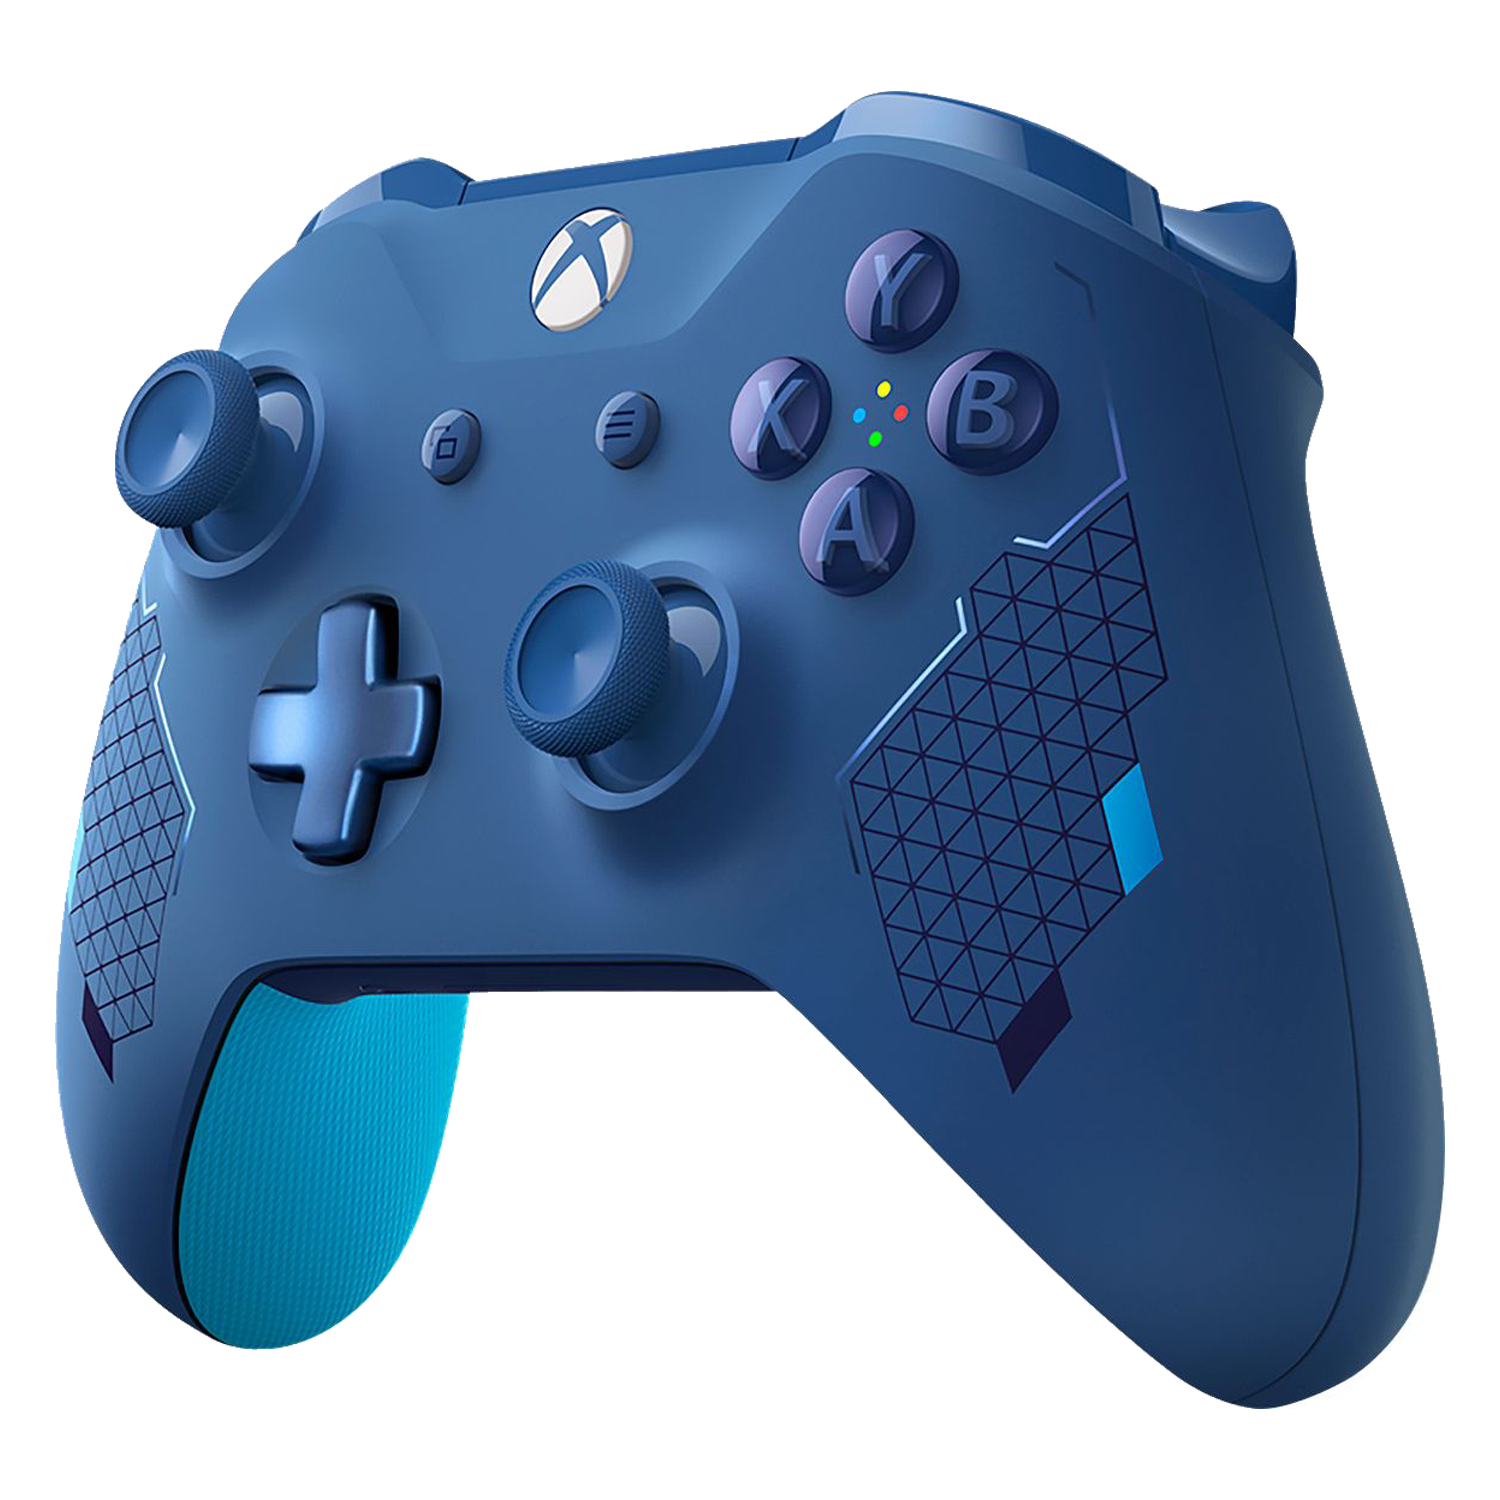 Controle Microsoft S para Xbox One - Sport Blue (Sem Caixa)